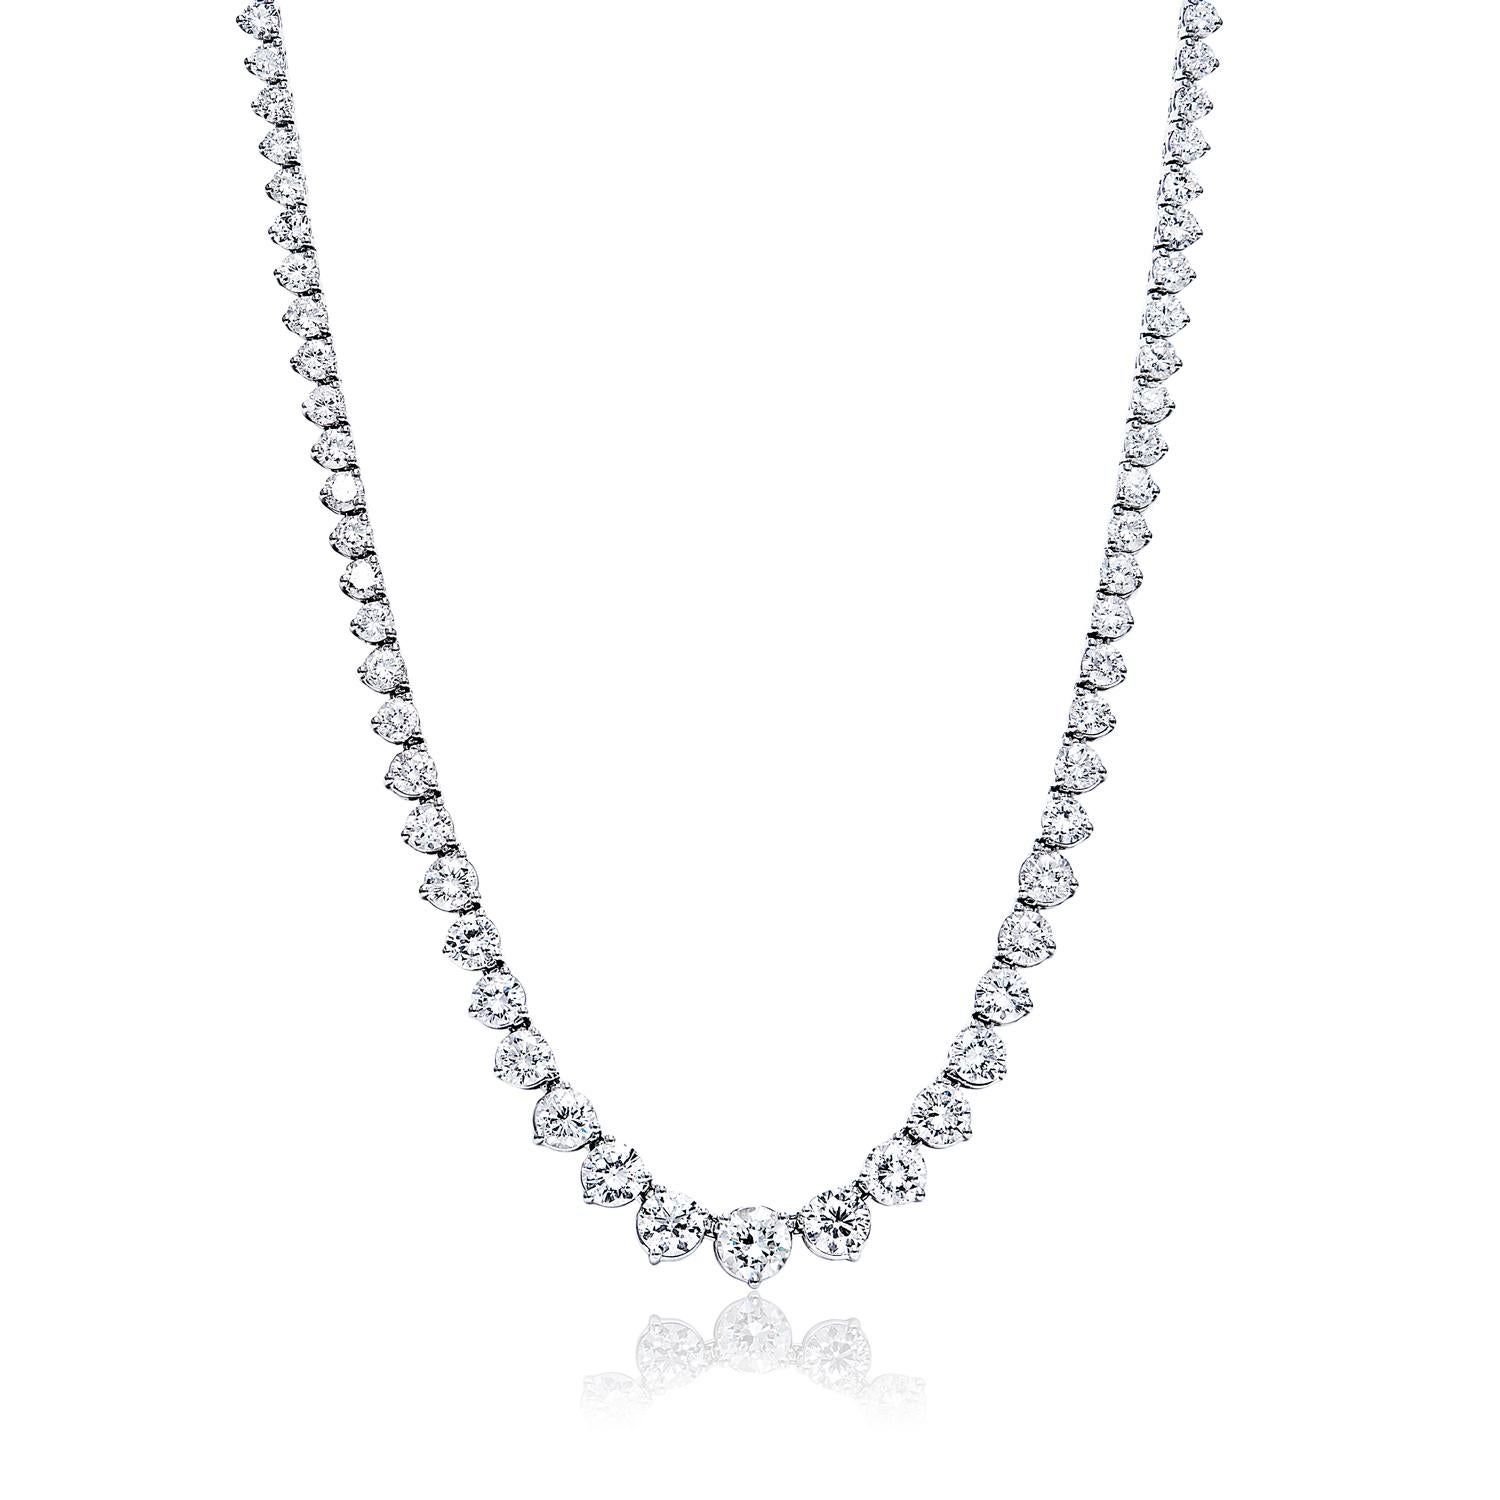 Diese wunderschöne Diamant-Halskette mit Erdminen ist perfekt für die besondere Dame in Ihrem Leben. Dieses Collier mit einem atemberaubenden runden Diamanten im Brillantschliff von 10,63 Karat ist in 14 Karat Weißgold gefasst und wird mit einer